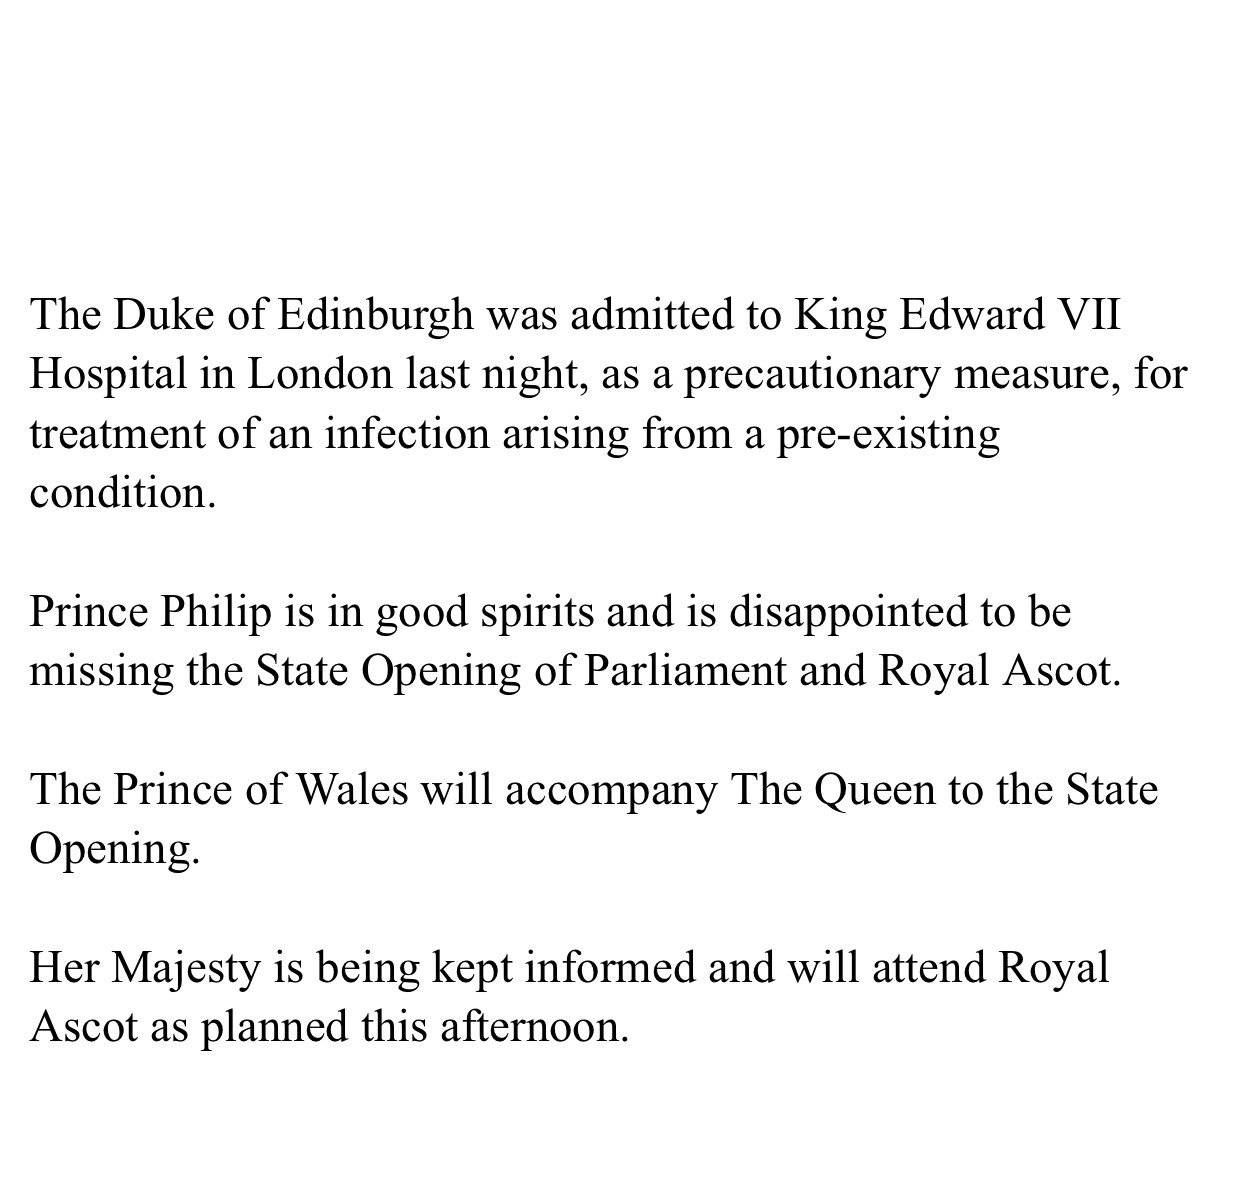 Duke of Edinburgh Admitted to Hospital